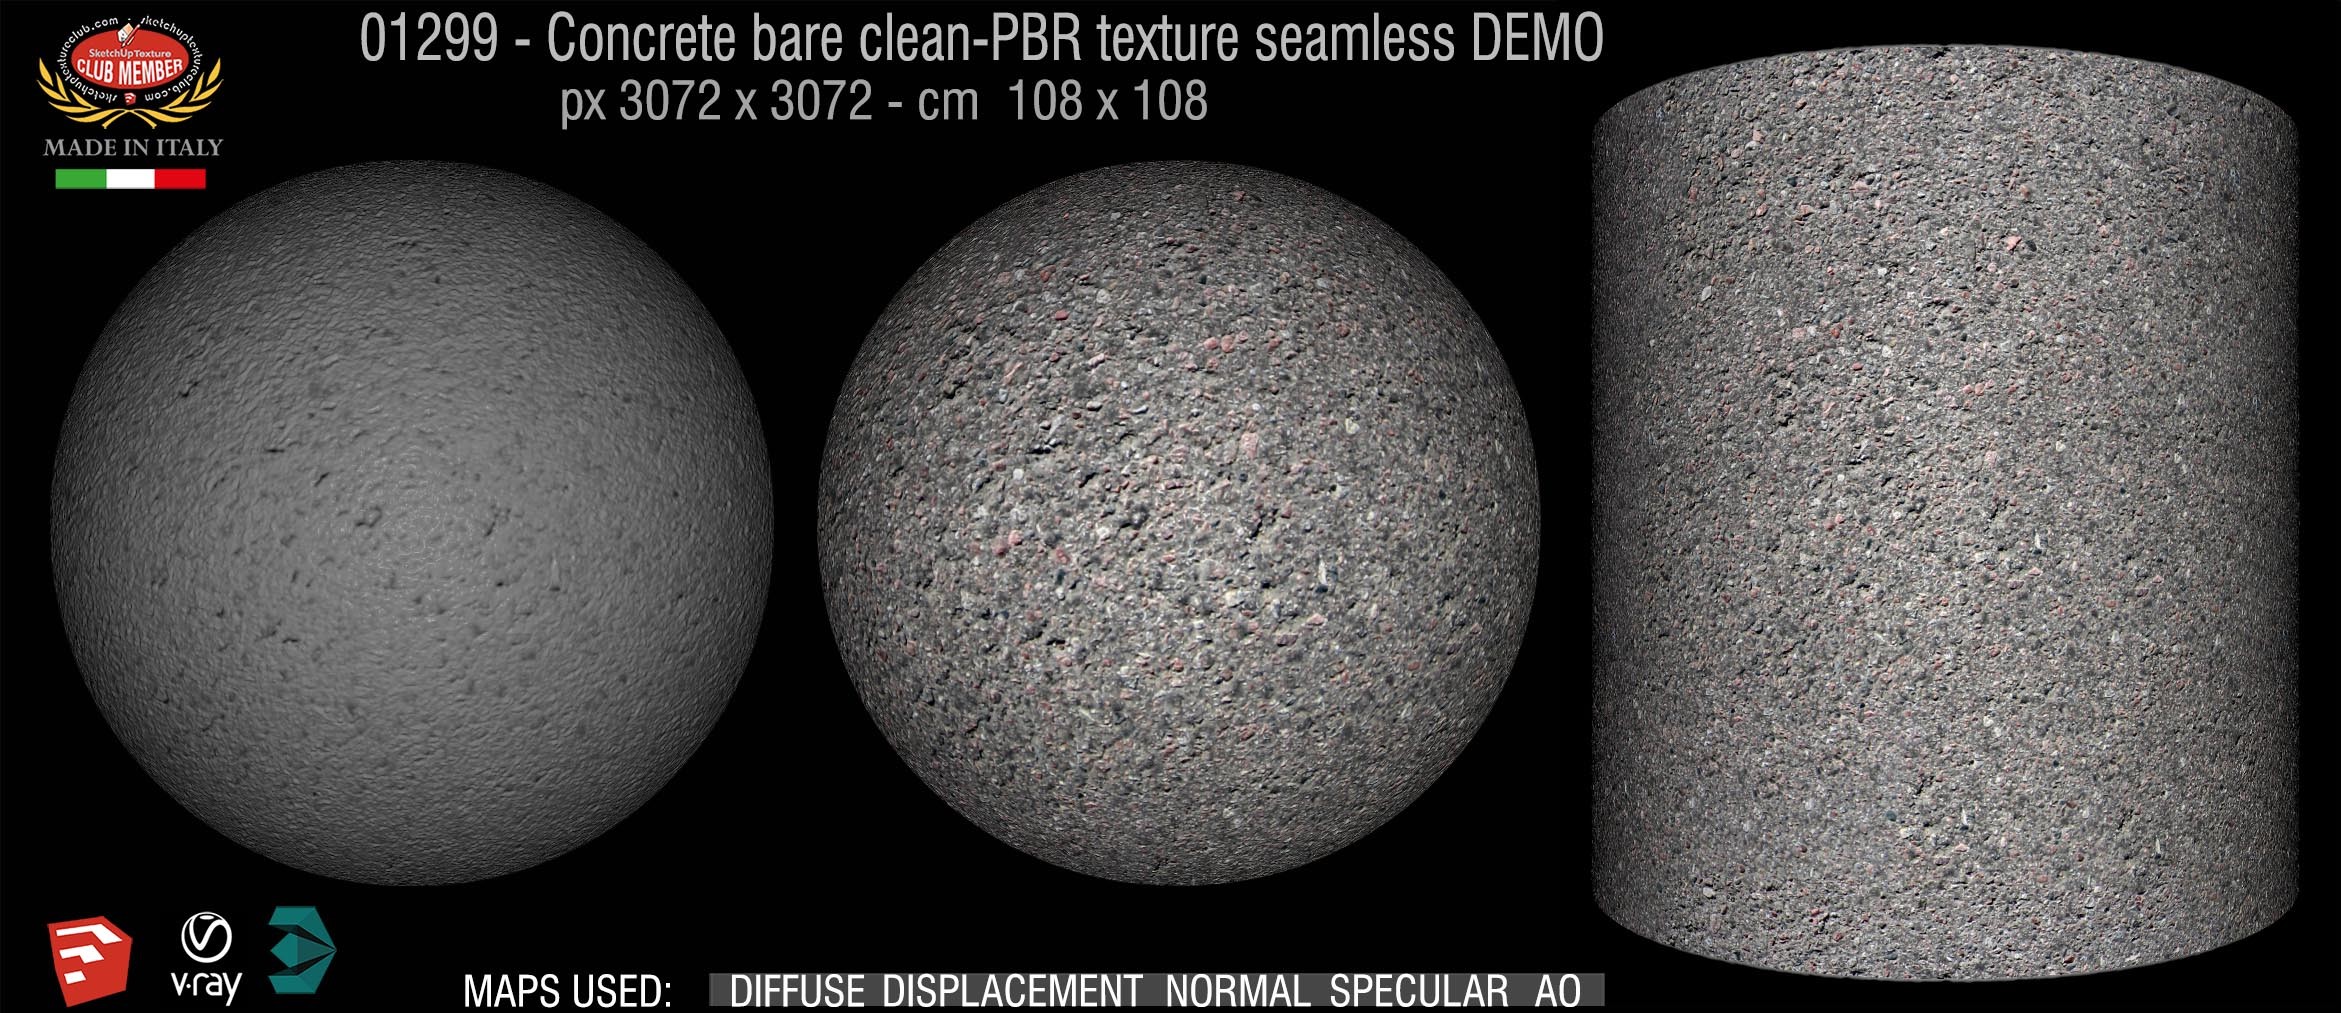 01299 Concrete bare clean-PBR texture seamless DEMO